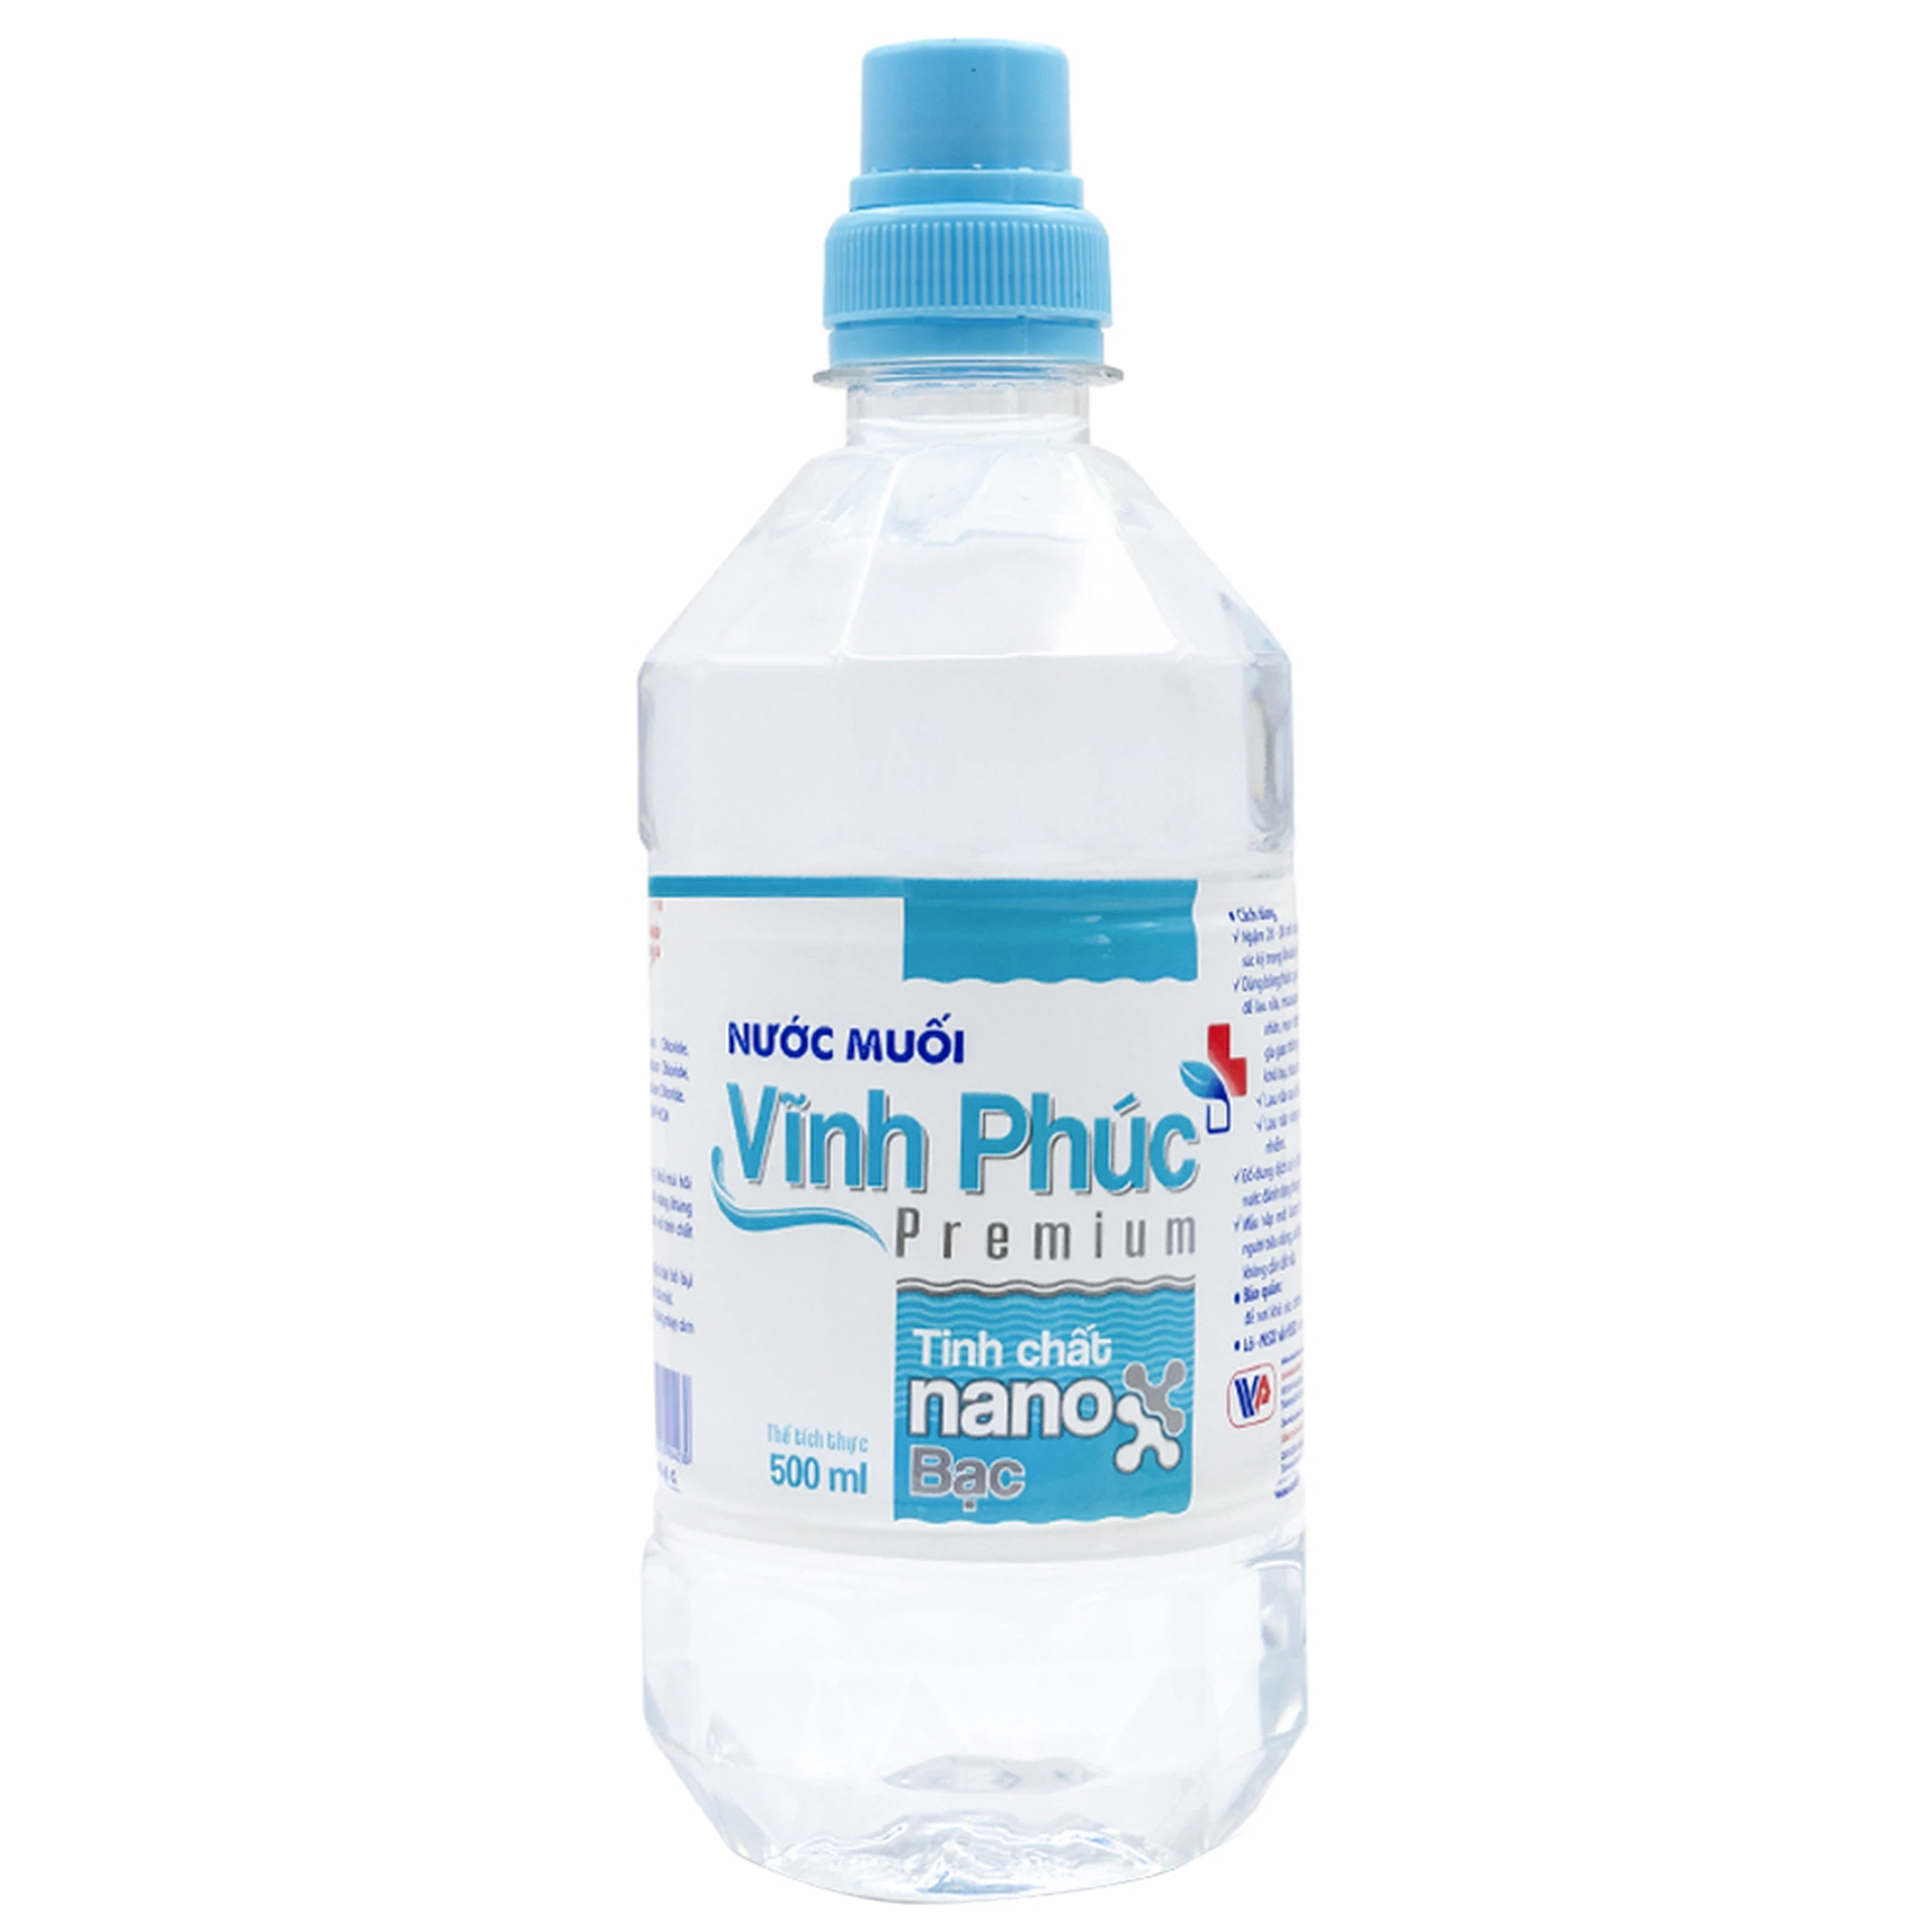 Nước muối Vĩnh Phúc Premium Tinh Chất Nano Bạc 1000ml kháng khuẩn, nấm trong khoang miệng